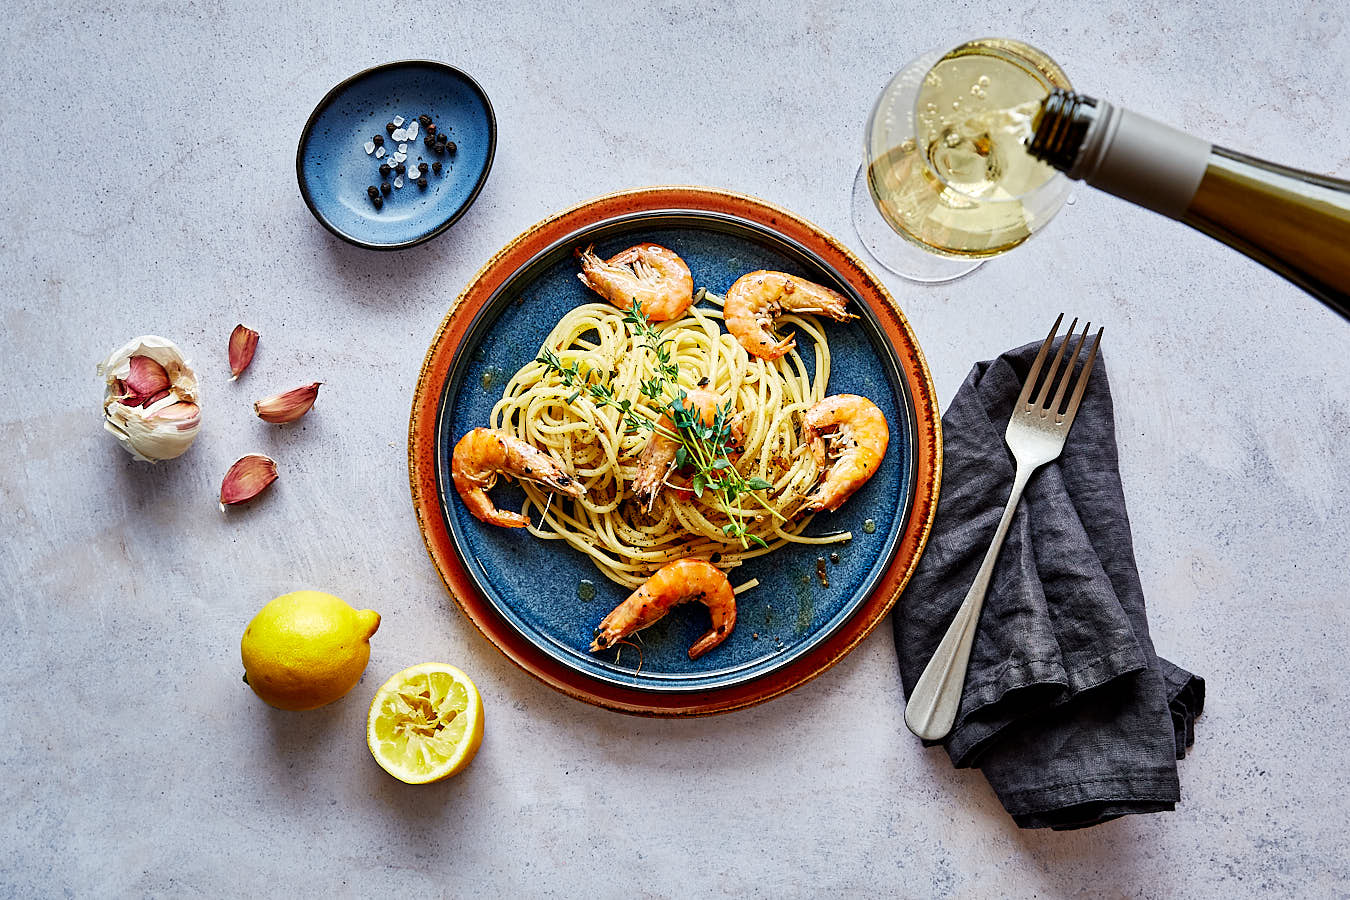 Rezept-Foto von Garnelen Zitronen Spaghetti auf Teller mit Weinglas daneben